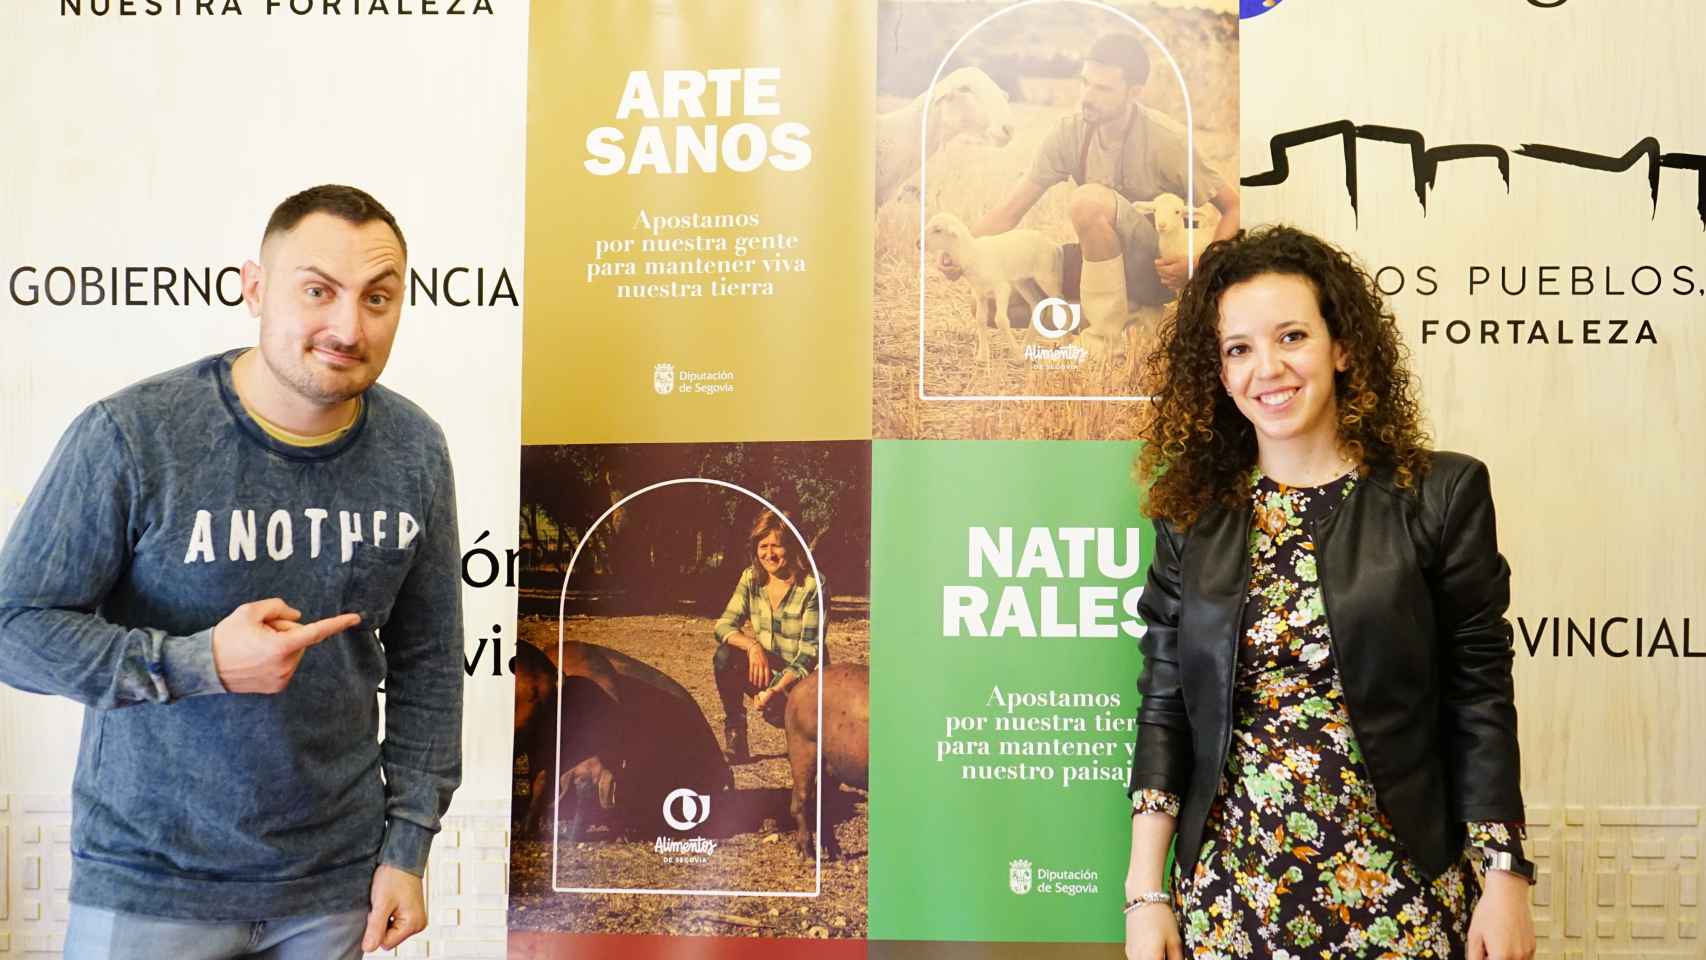 La Diputación de Segovia y el mago Héctor Sansegundo unen fuerzas para crear un espectáculo a medida sobre hábitos saludables